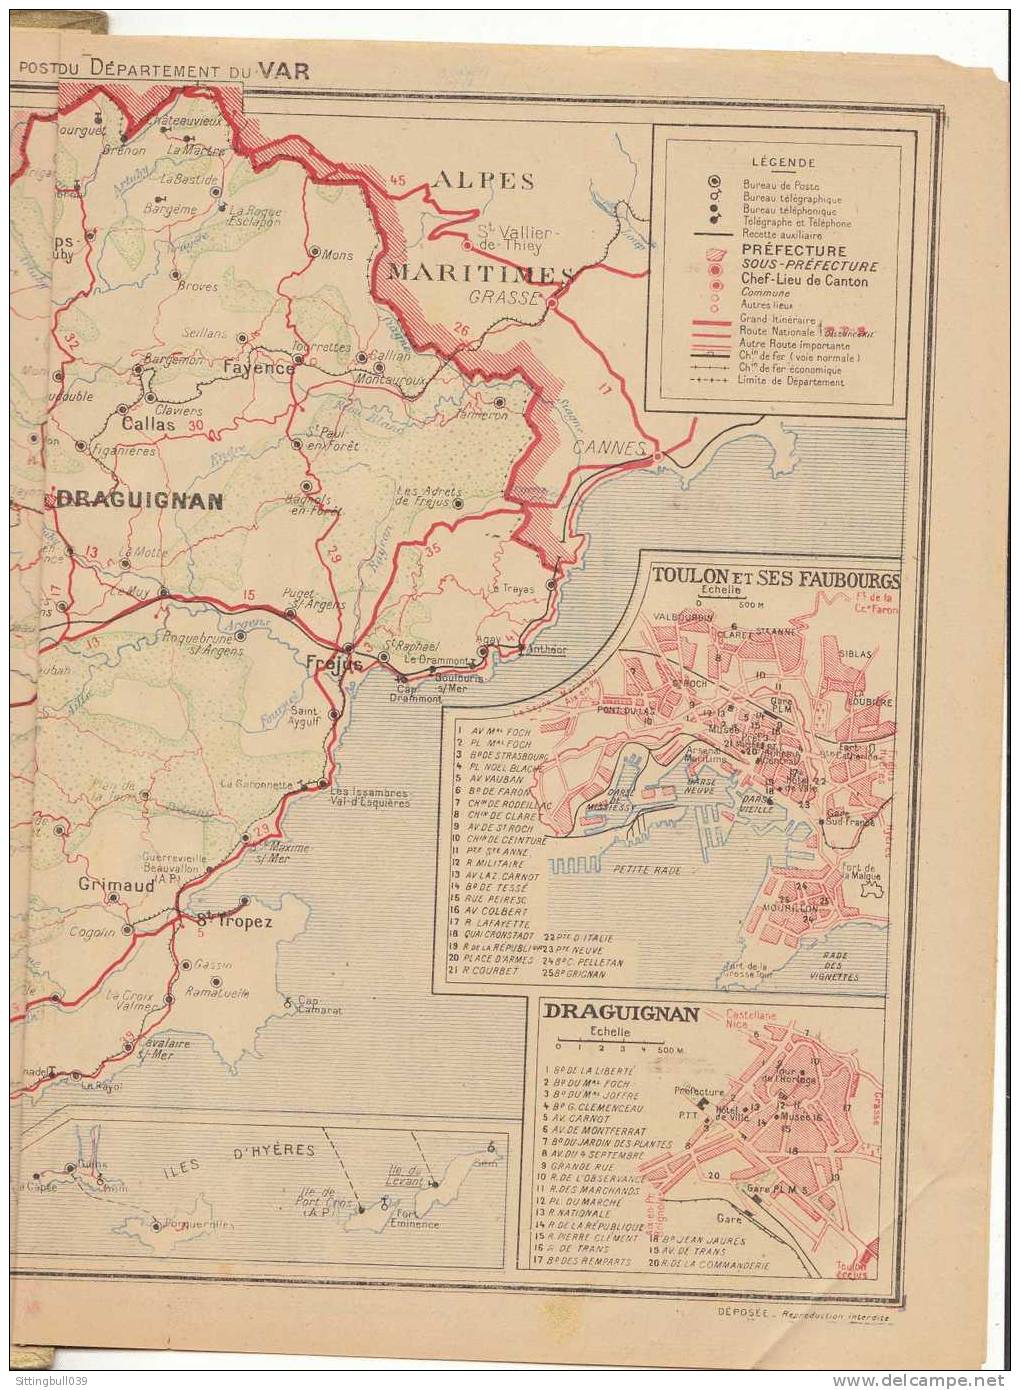 Almanach Des PTT. Calendrier 1952 (83). Retour De La Chasse Aux Canards. Imp. OLLER. Complet. - Tamaño Grande : 1941-60